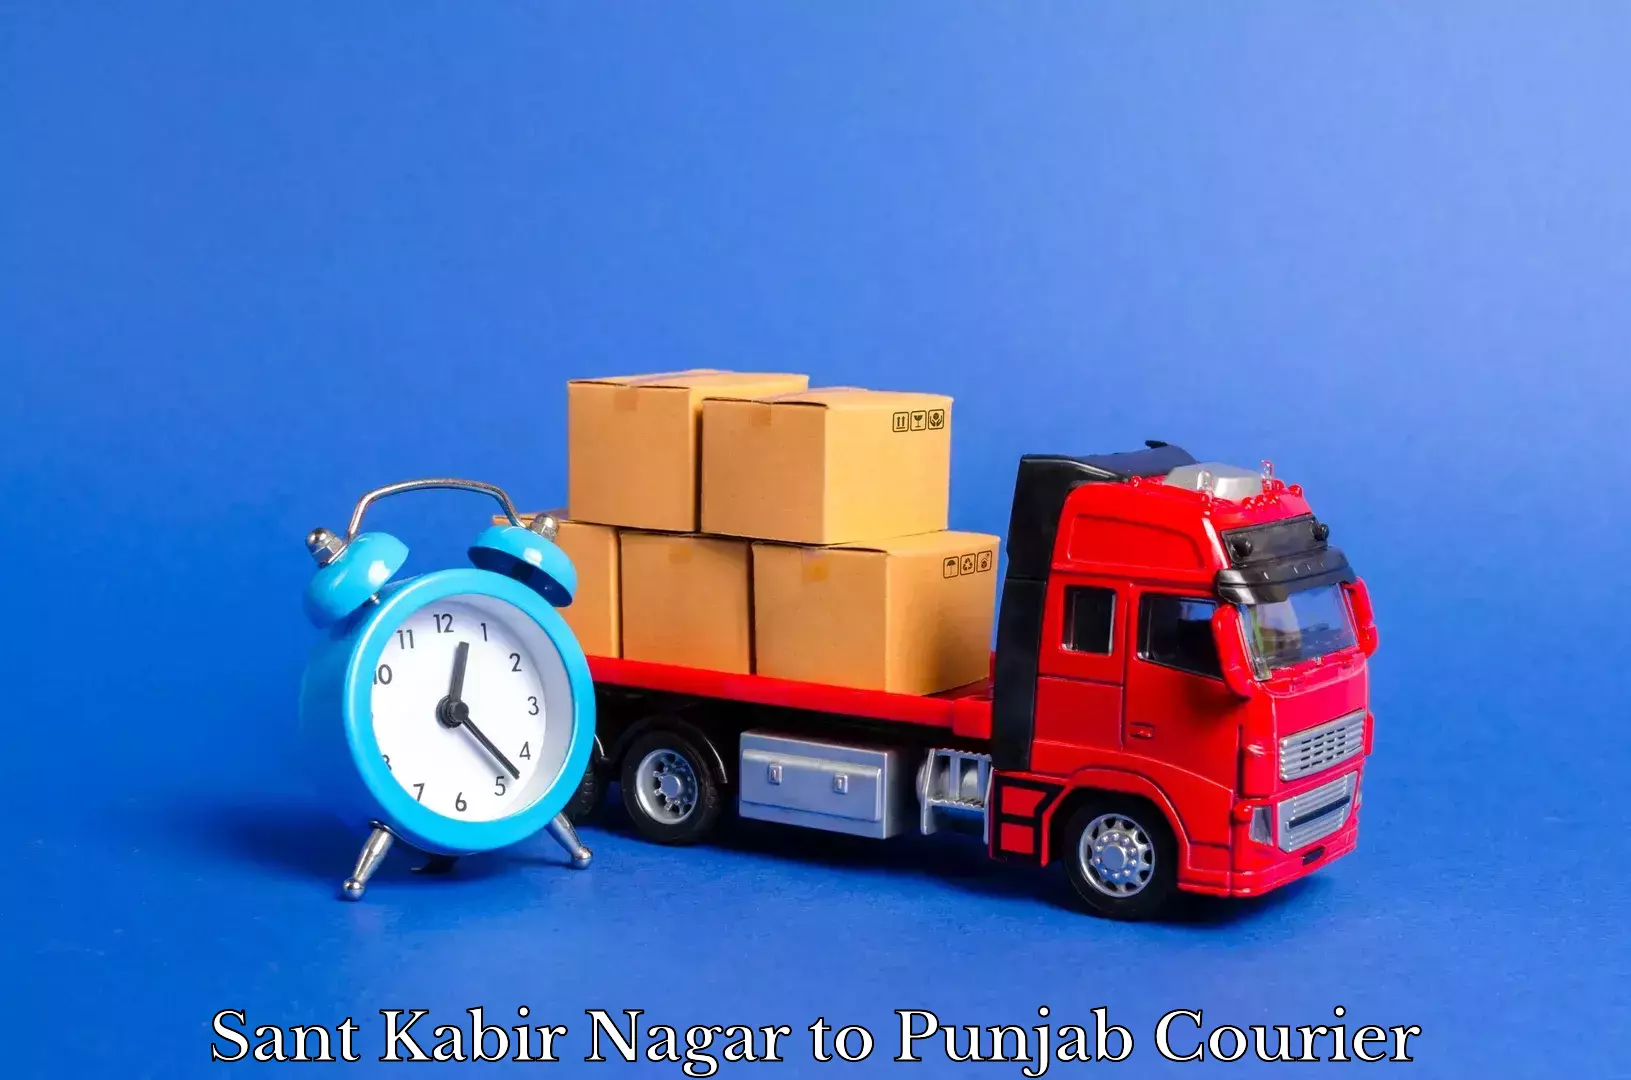 Furniture delivery service Sant Kabir Nagar to Begowal